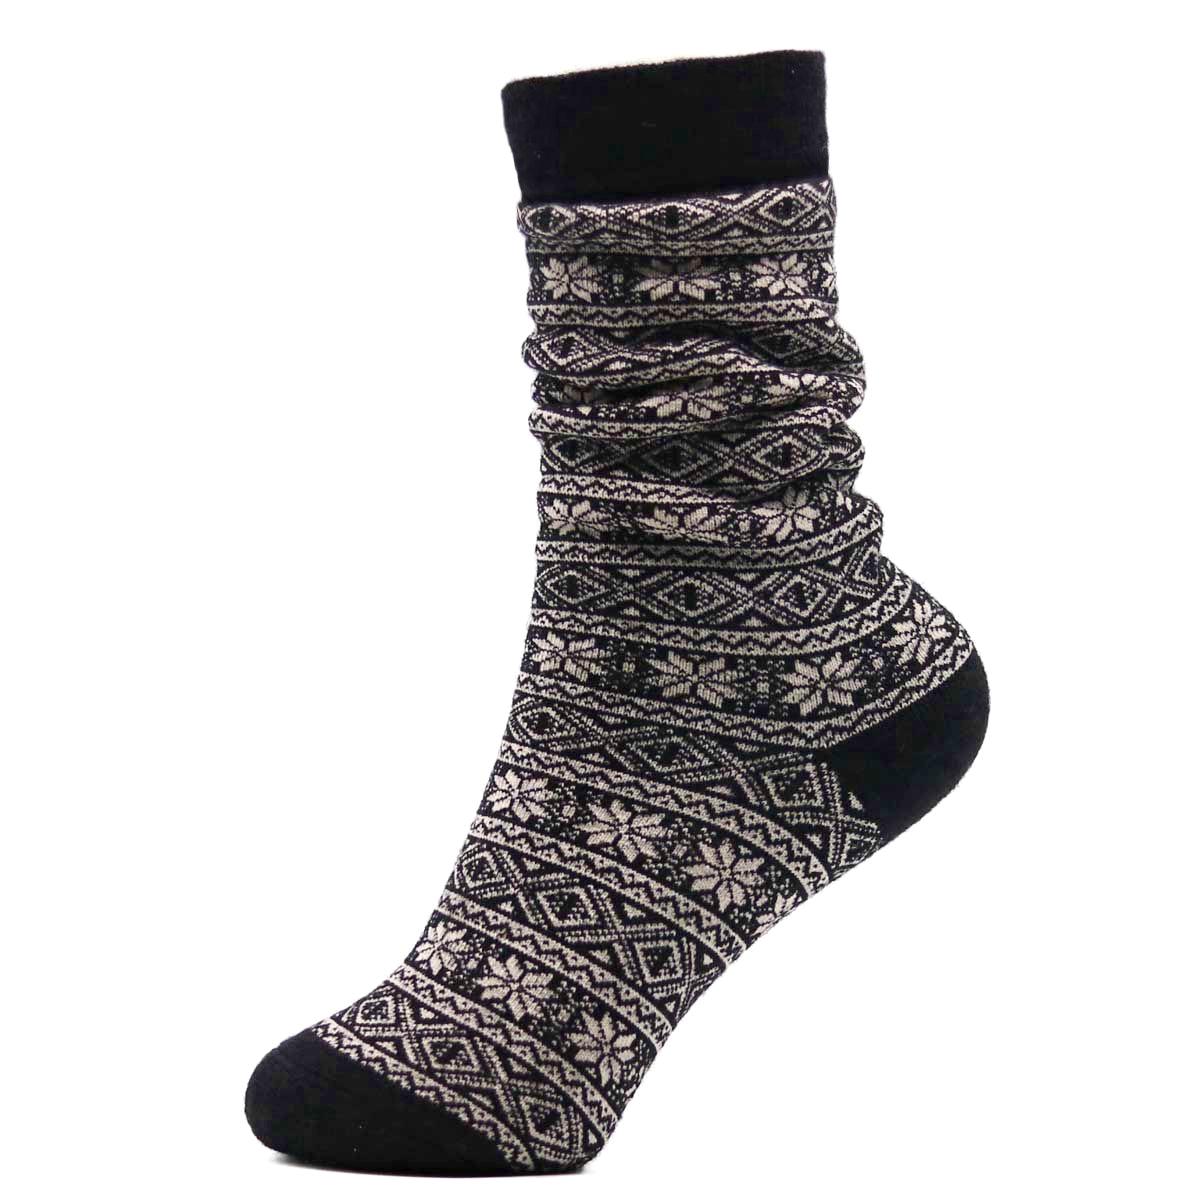 Nootkas Alpaca Wool Nordic Sock in Black